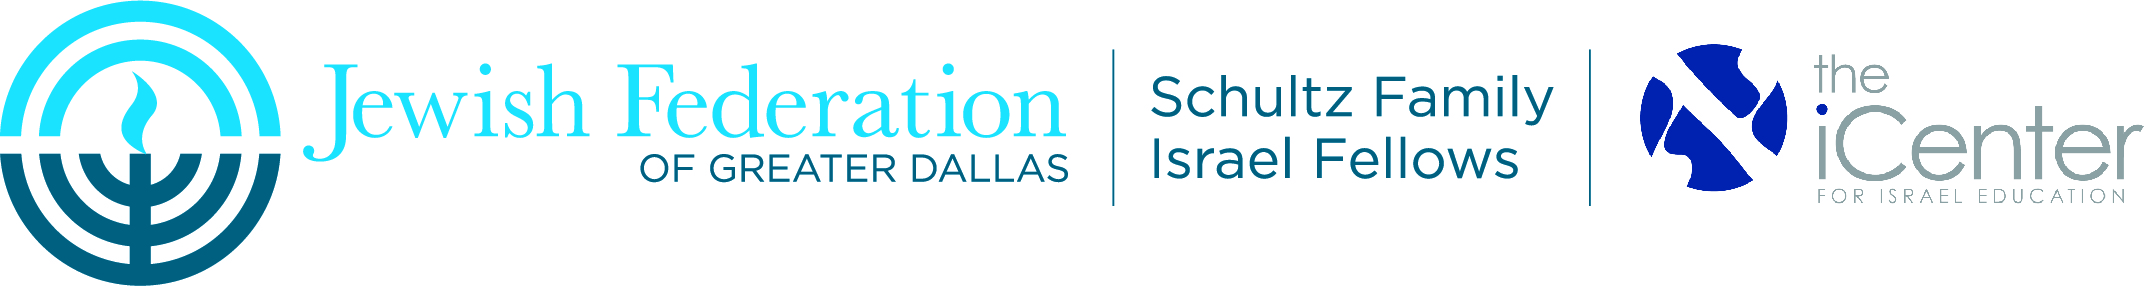 Jewish Fed. Dallas - logo